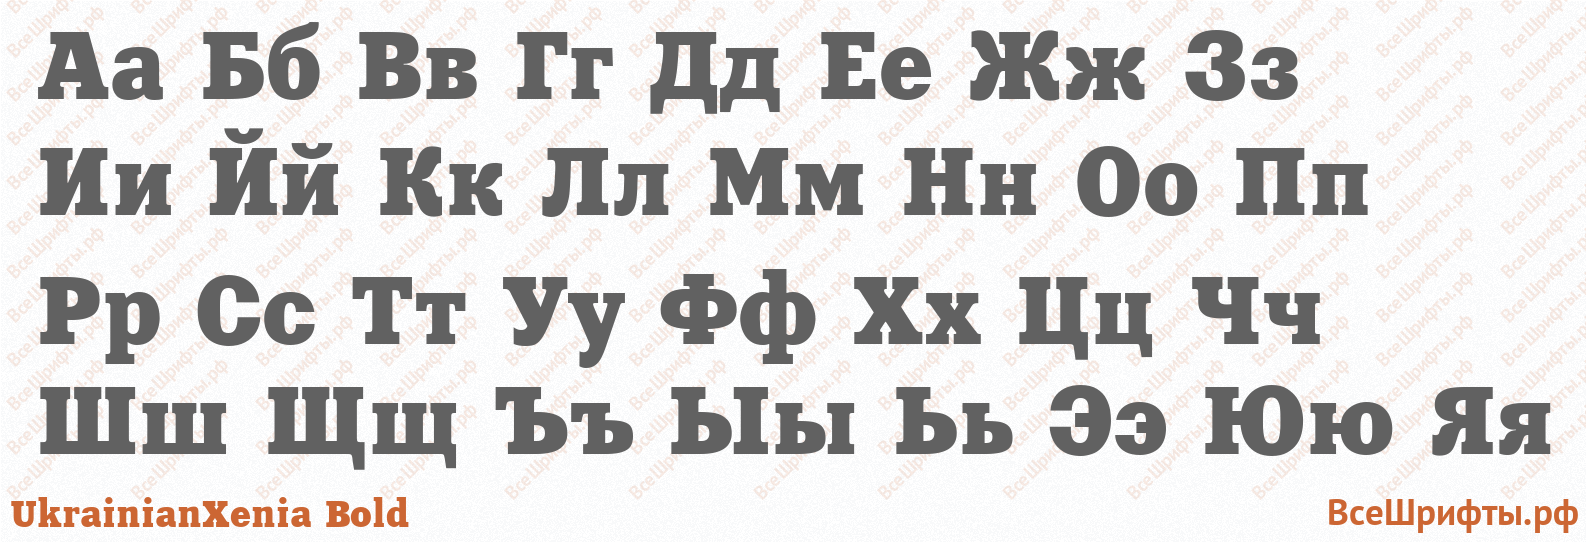 Шрифт UkrainianXenia Bold с русскими буквами